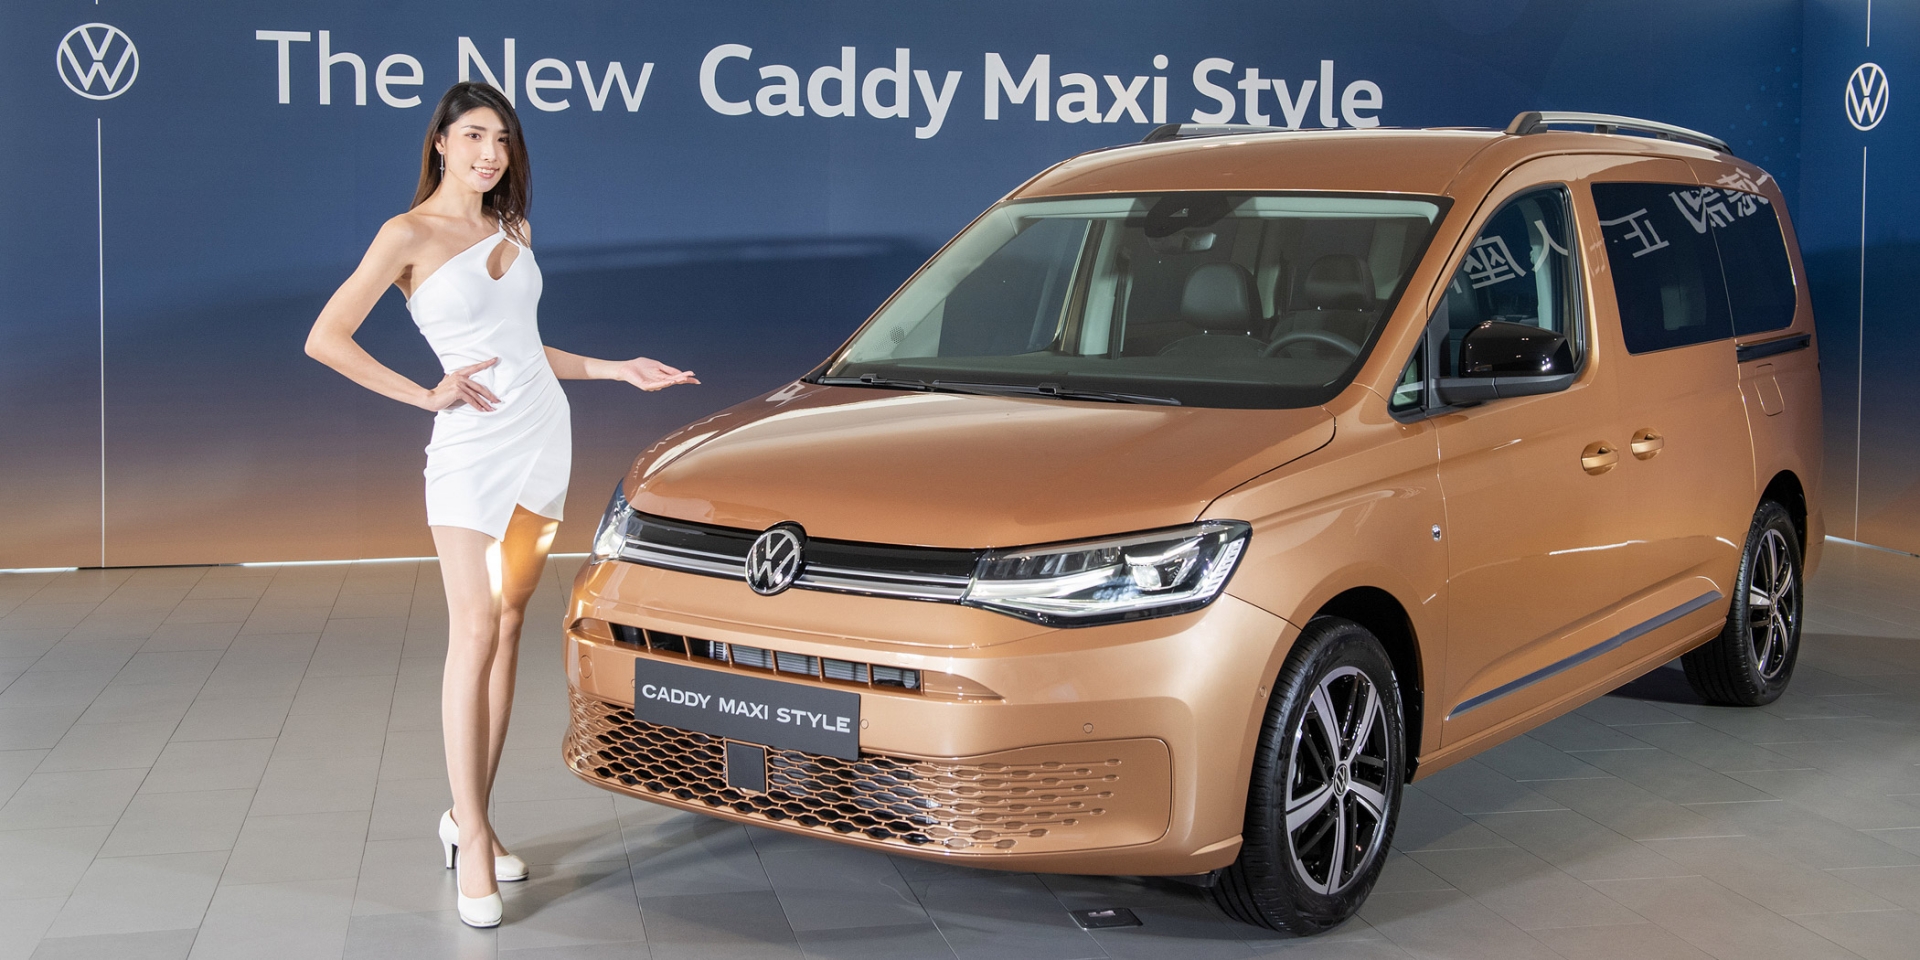 同級唯一德制正七人座休旅 福斯商旅Caddy Maxi Style 145.8萬元 預售登場